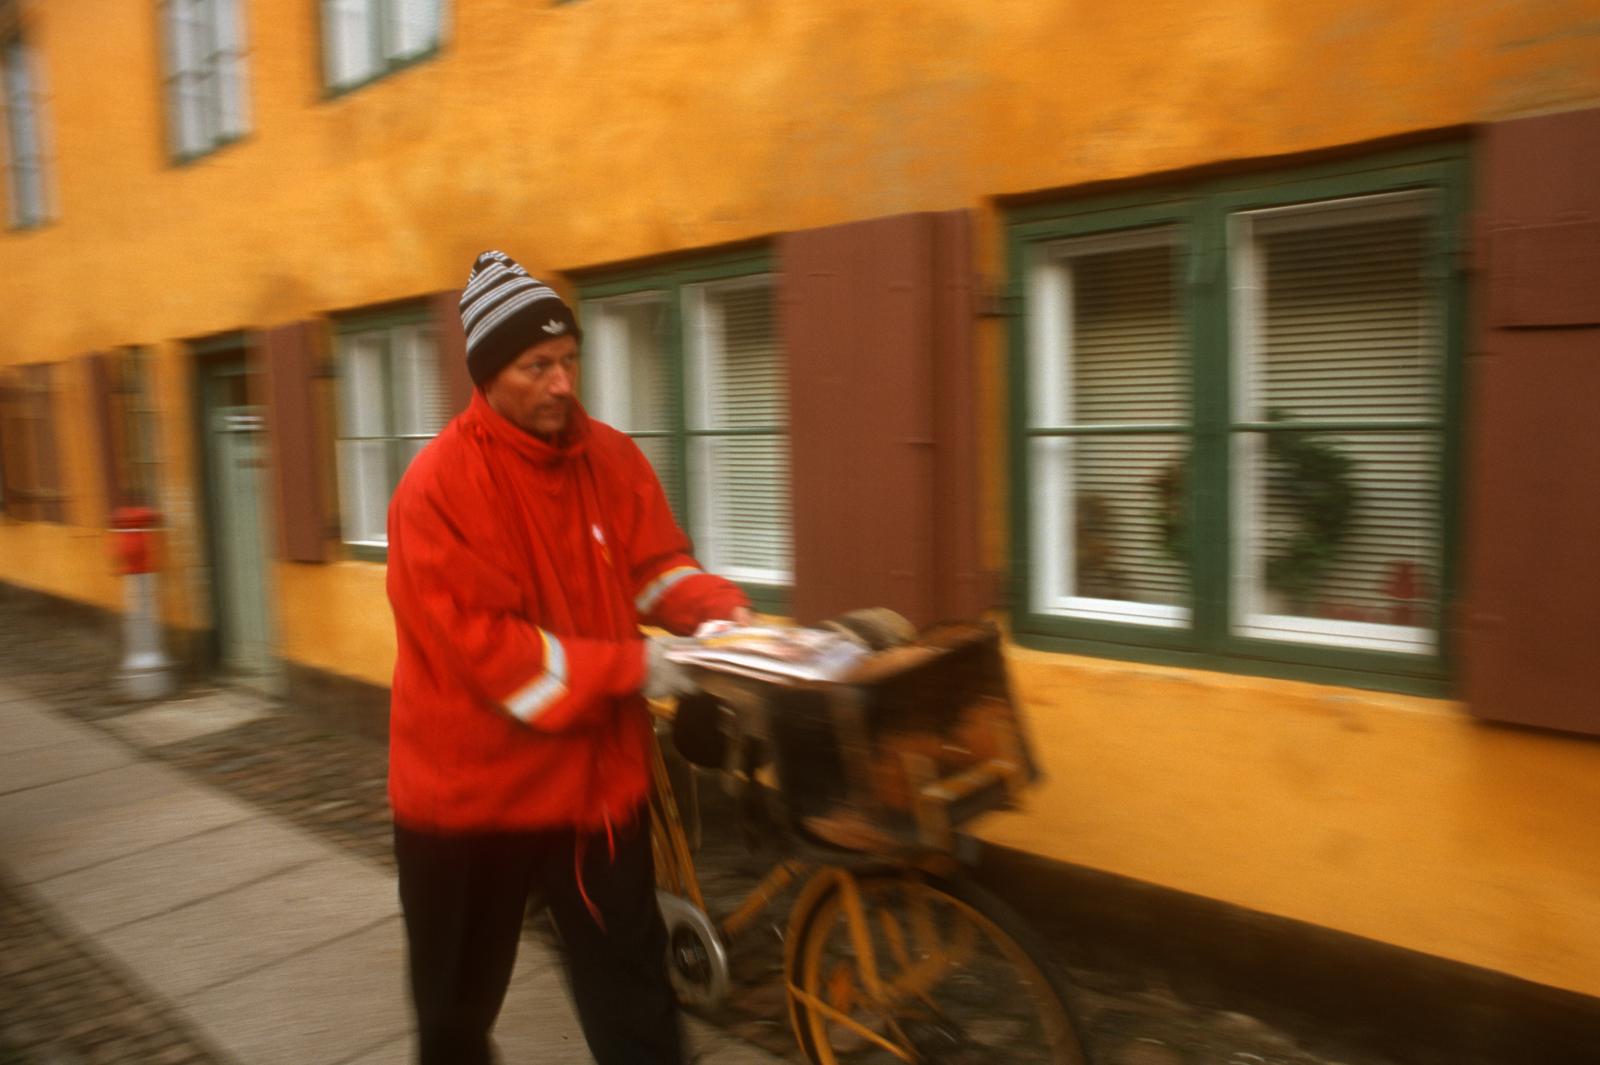 A postman delivers mail in the ...hborhood in Copenhagen, Denmark